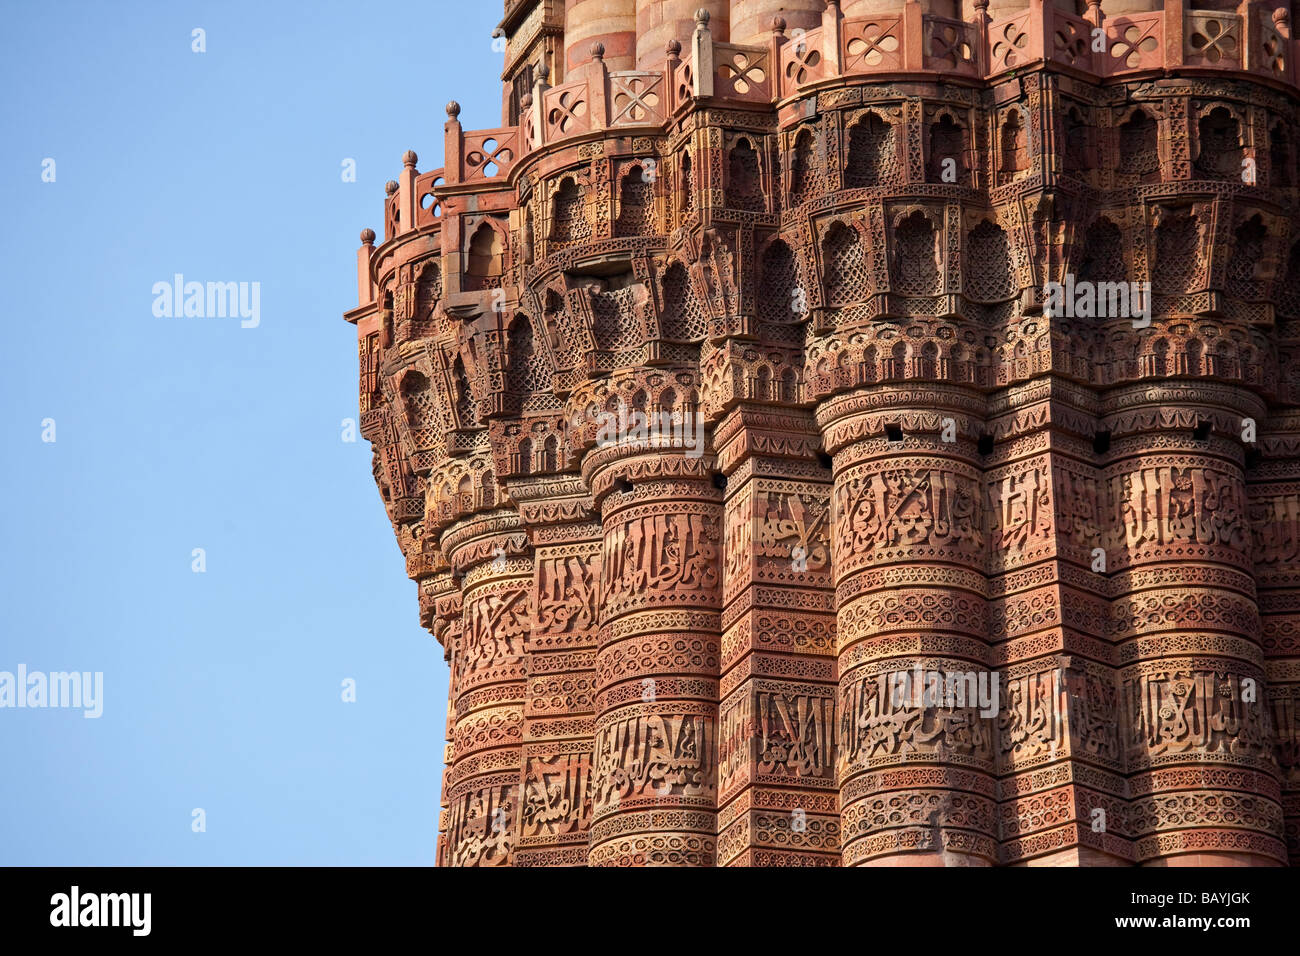 Detalles sobre el Qutb Minar en Delhi, India Foto de stock